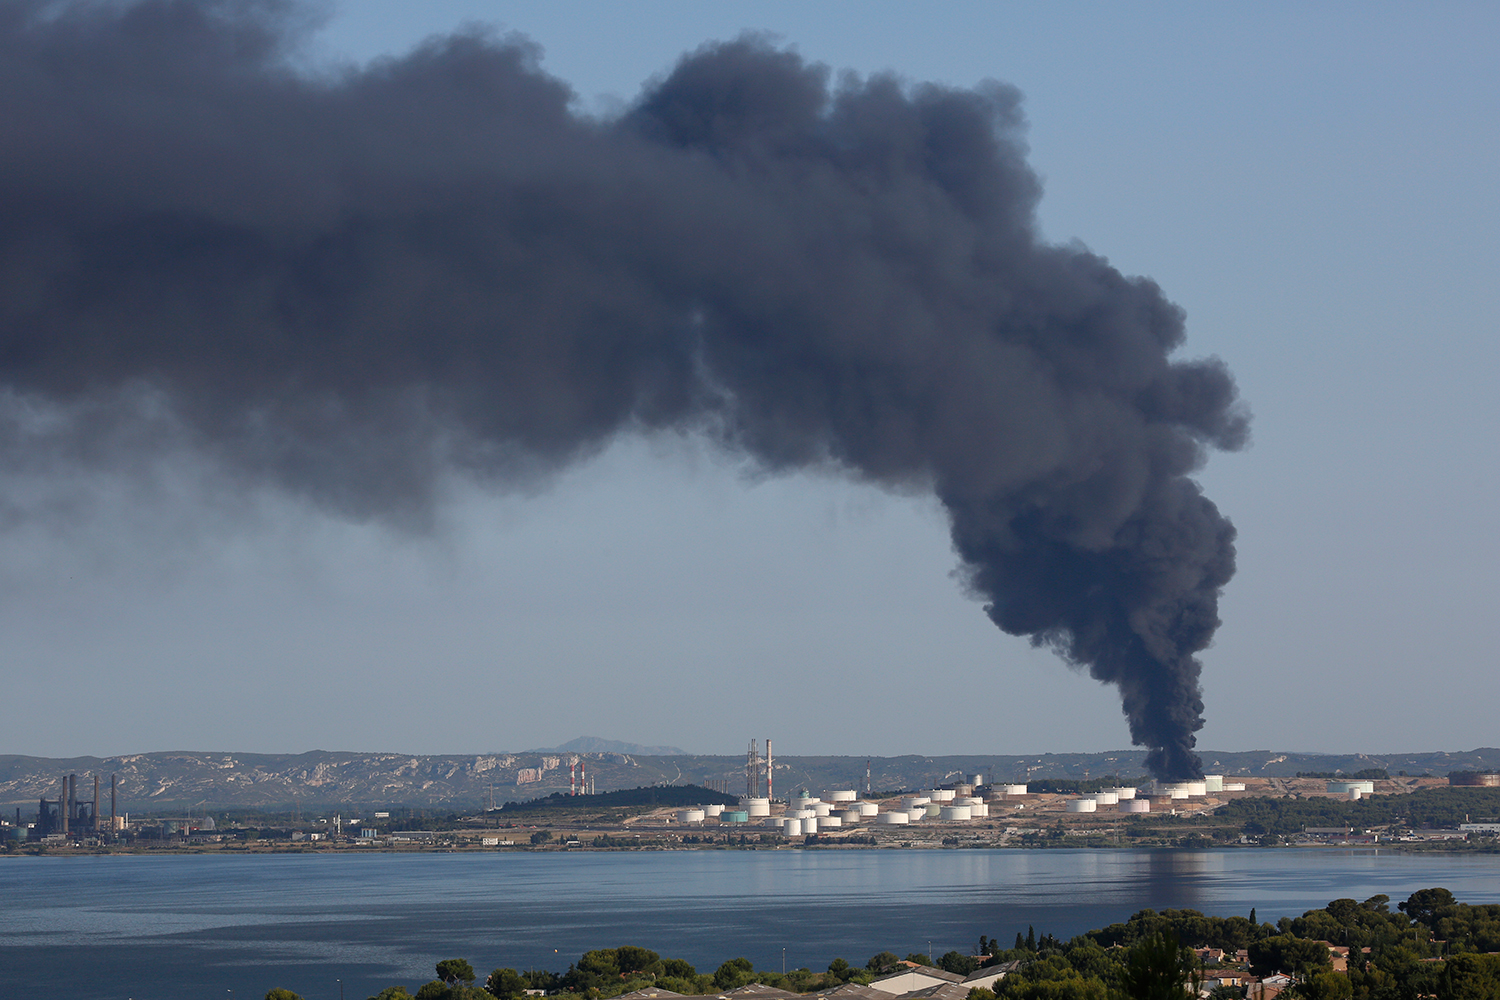 Espectacular explosión de dos tanques de una planta petroquímica en el sur de Francia